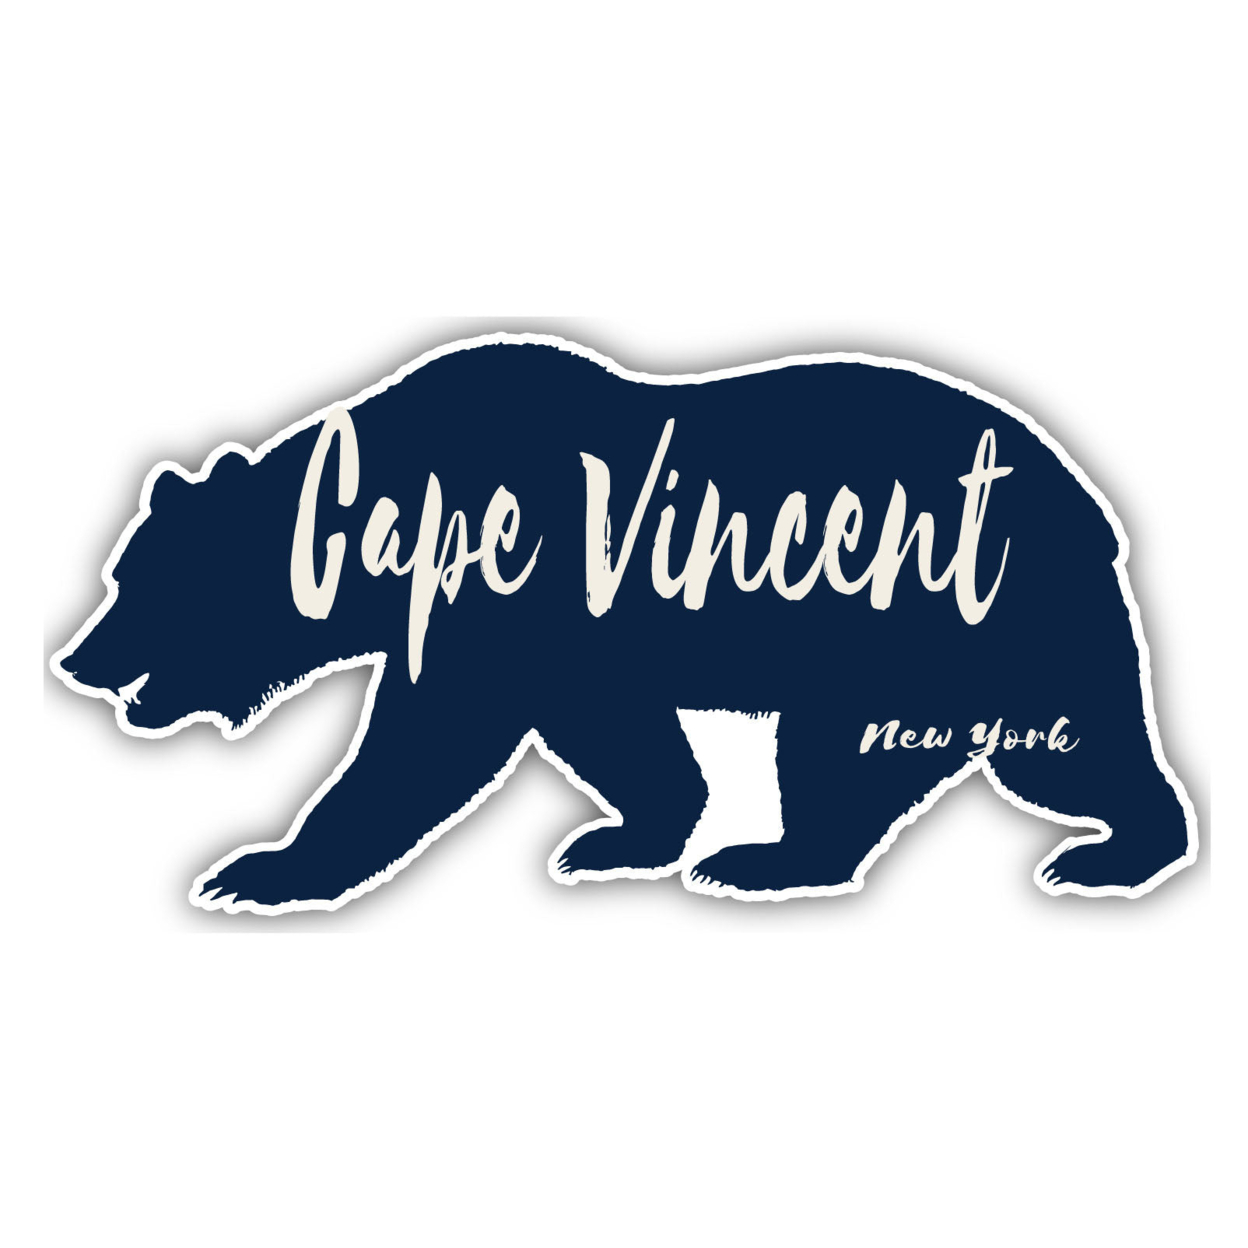 Cape Vincent New York Souvenir Decorative Stickers (Choose Theme And Size) - Single Unit, 8-Inch, Bear